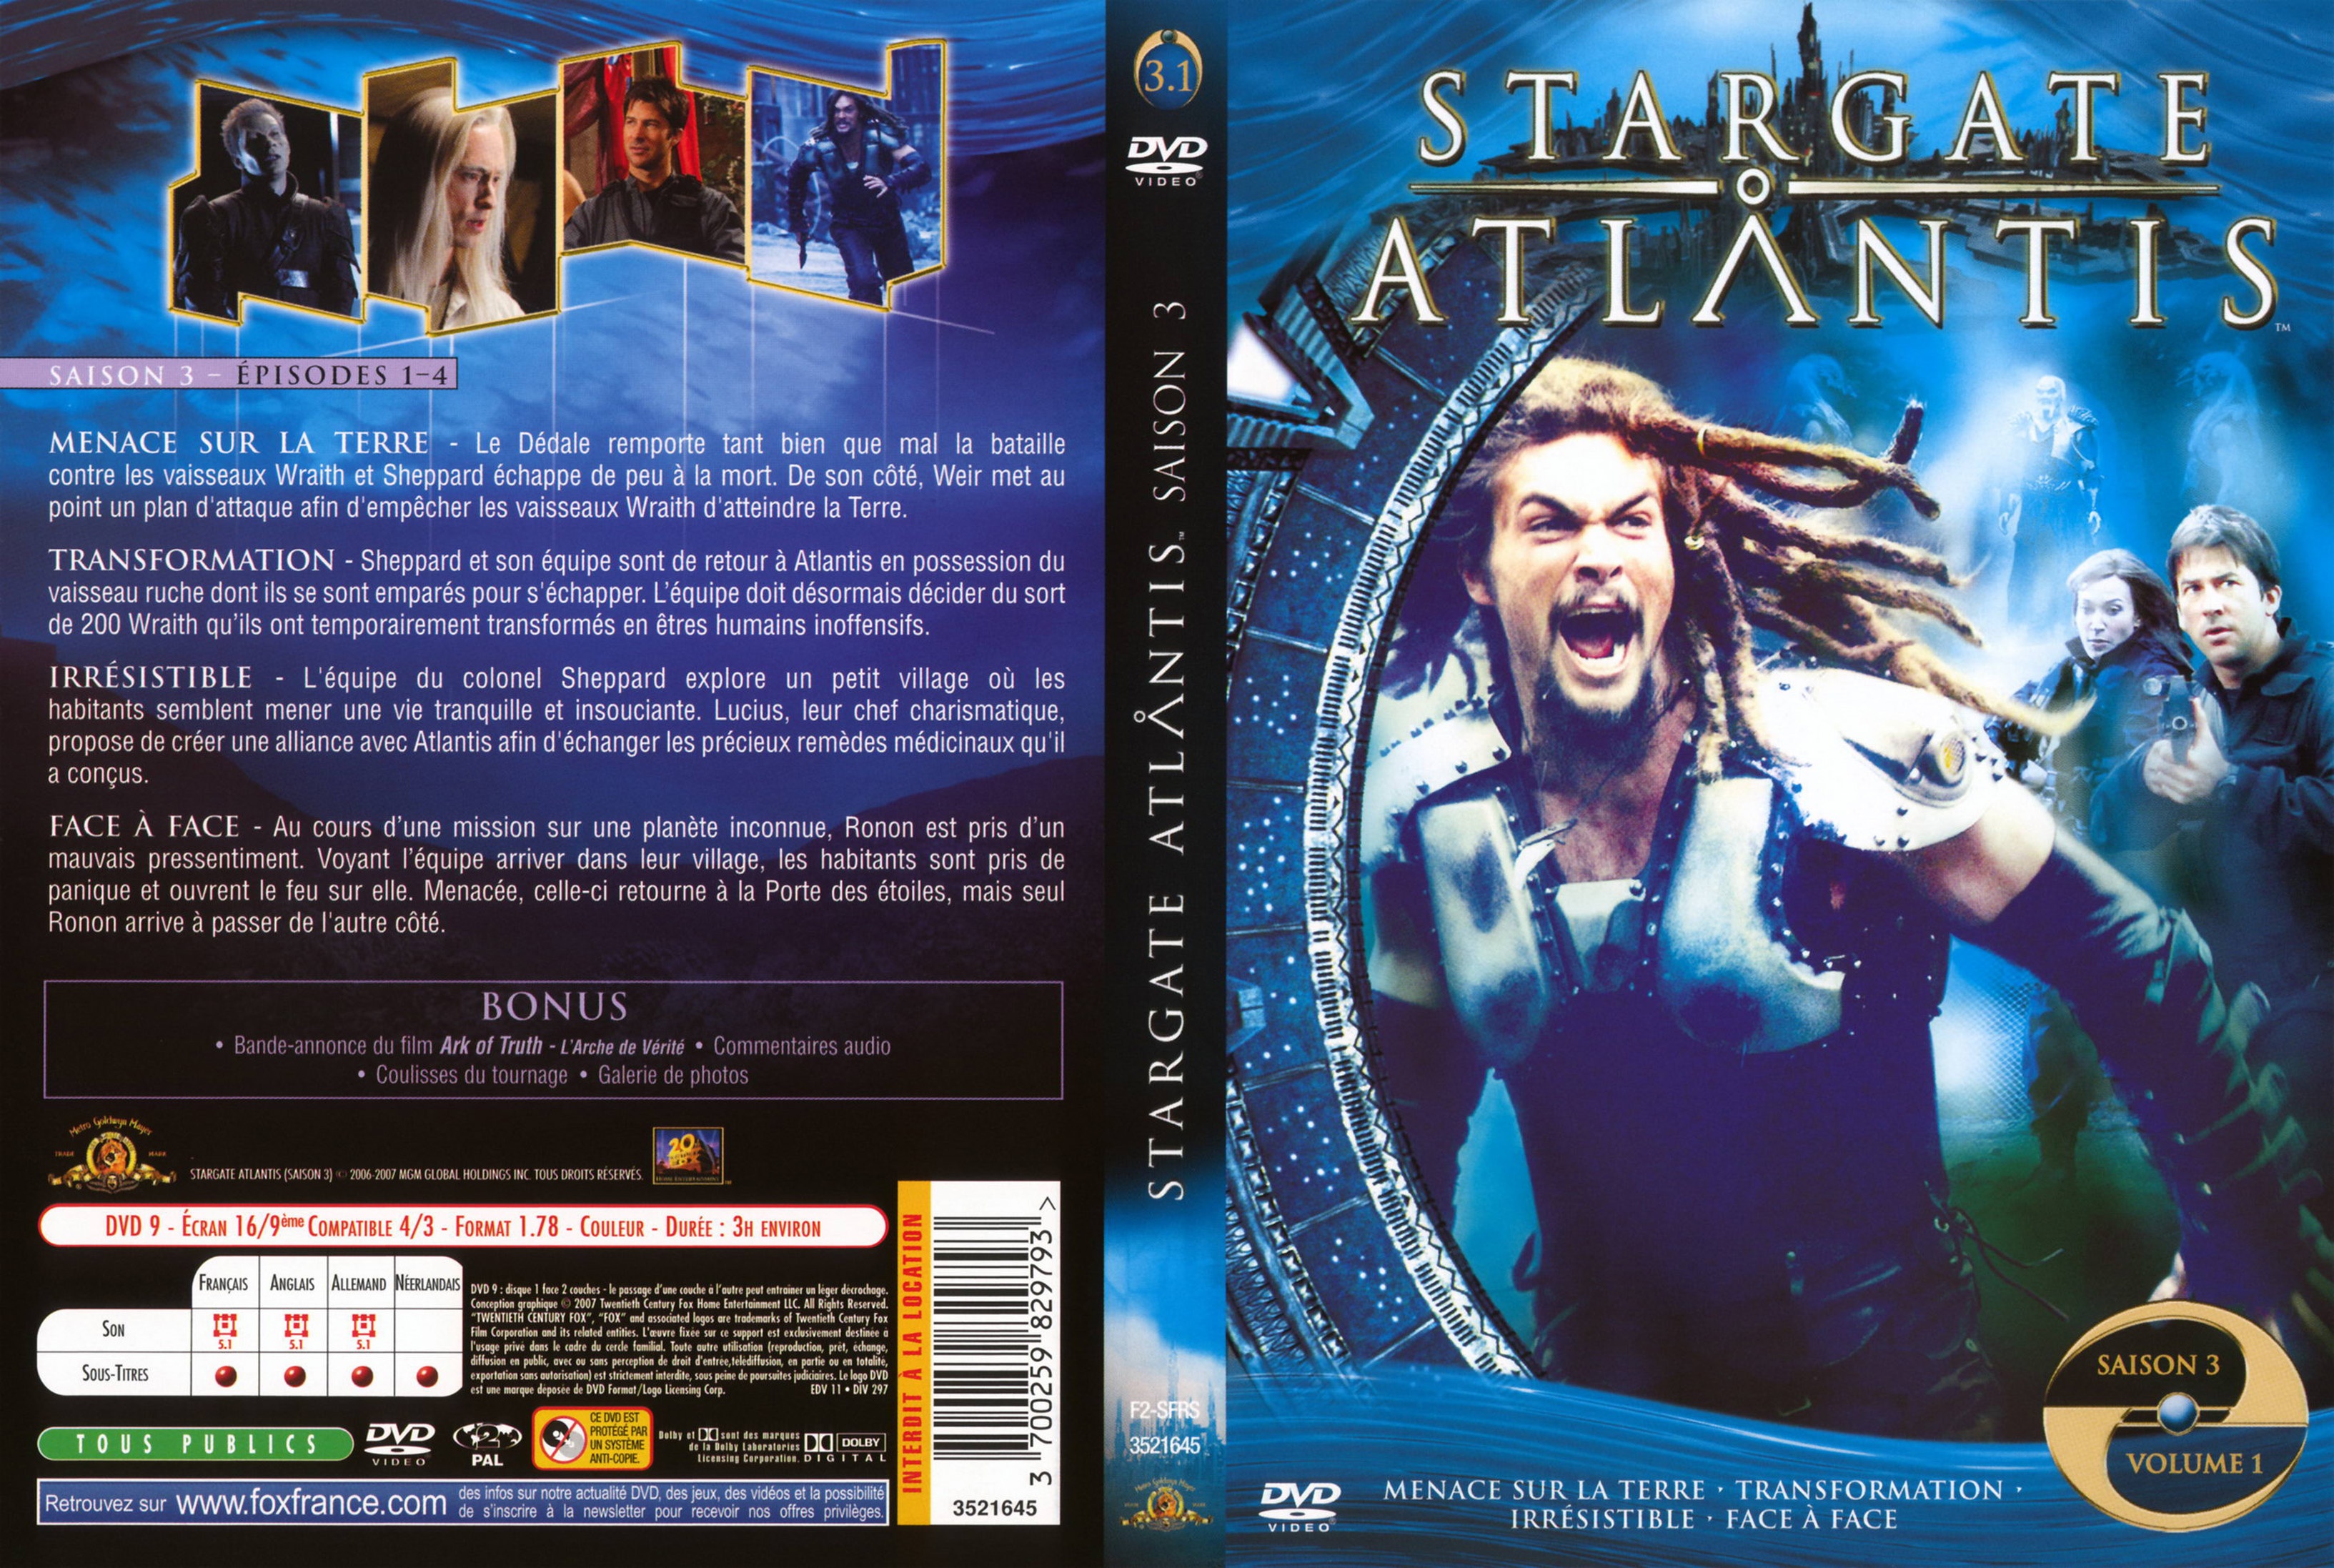 Jaquette DVD Stargate Atlantis Saison 3 vol 1